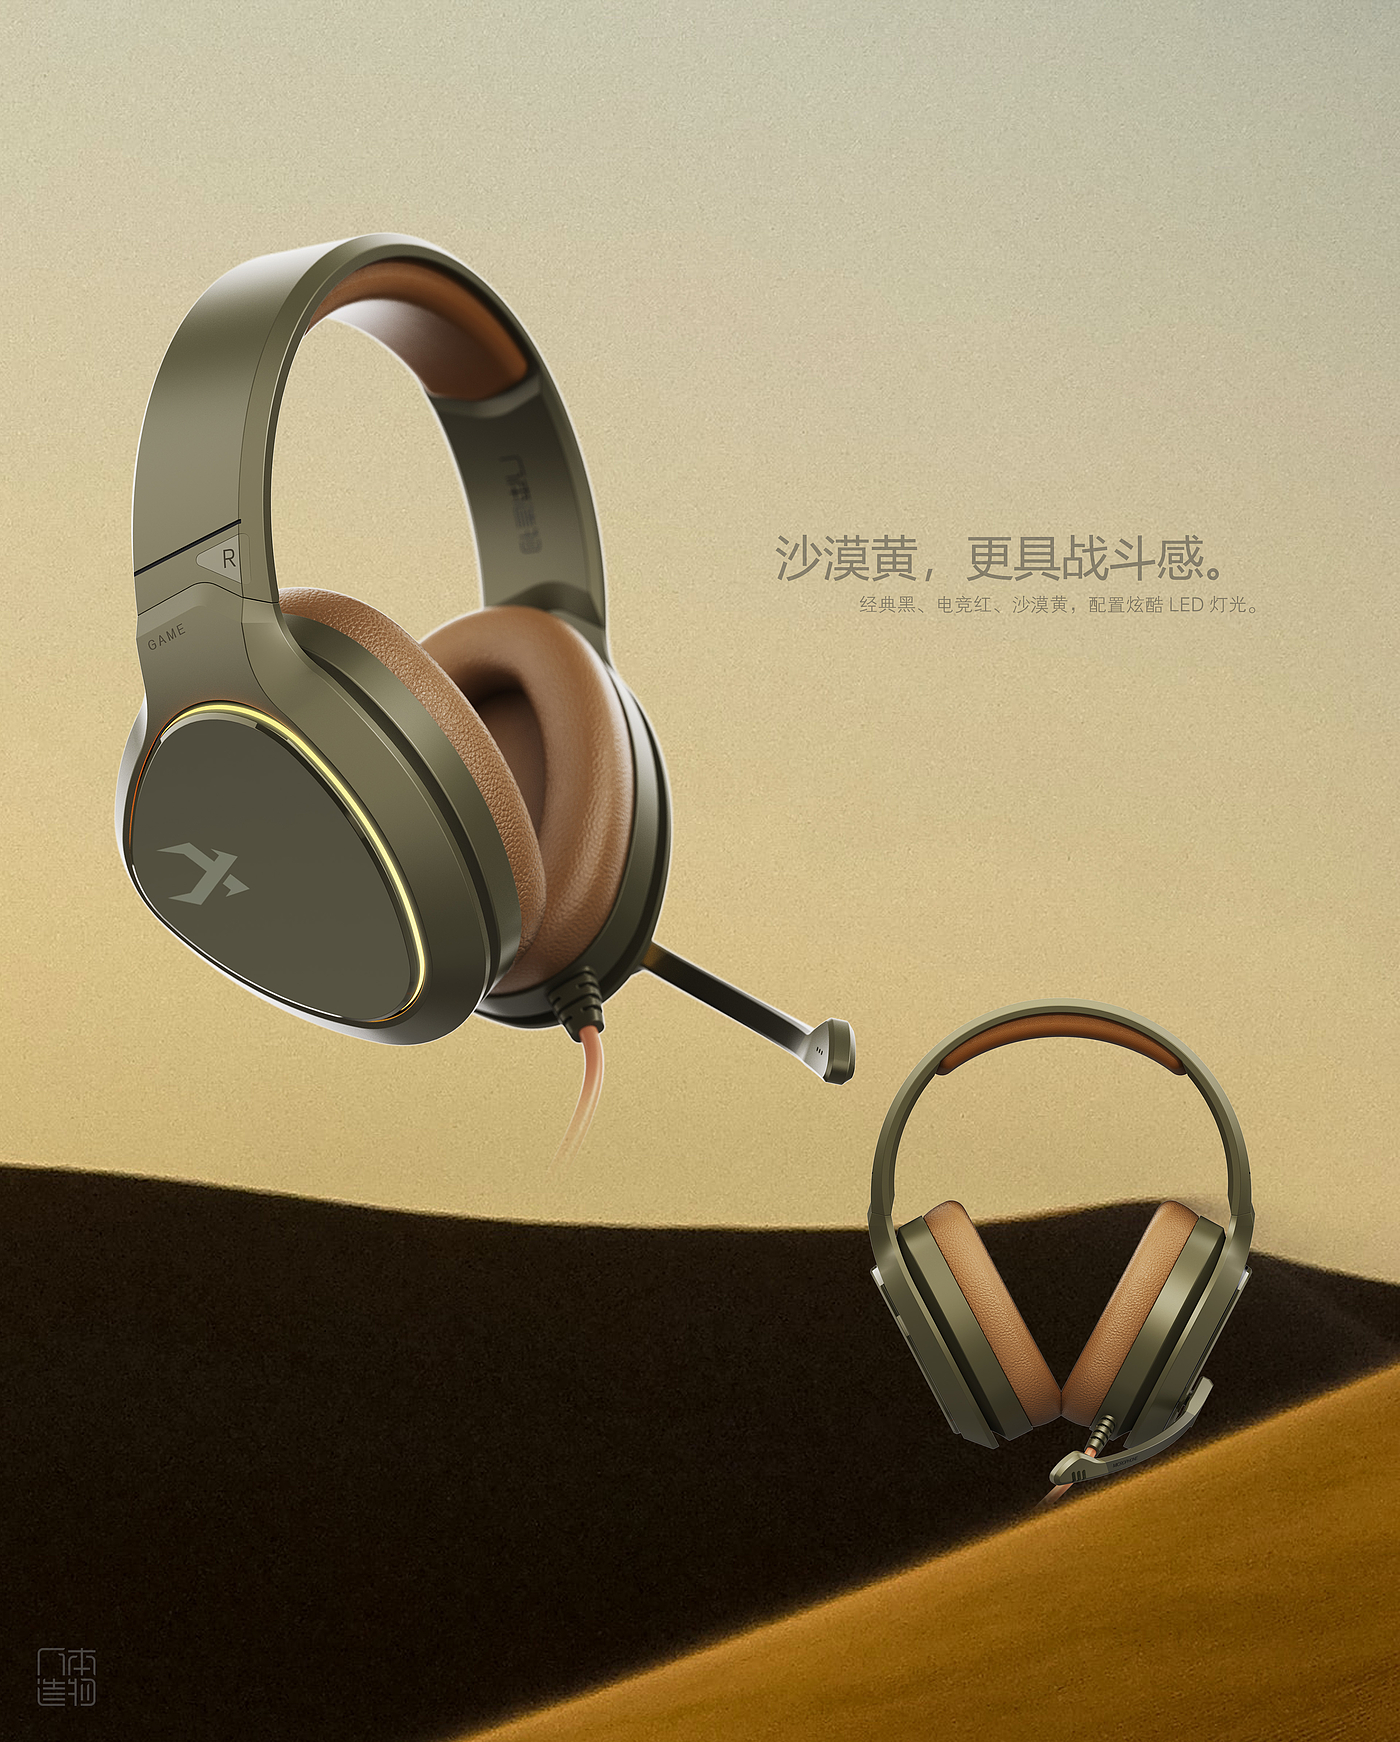 头戴式游戏耳机ID设计，耳机外观设计公司，深圳广州东莞3C耳机设计，无线蓝牙TWS耳机设计，